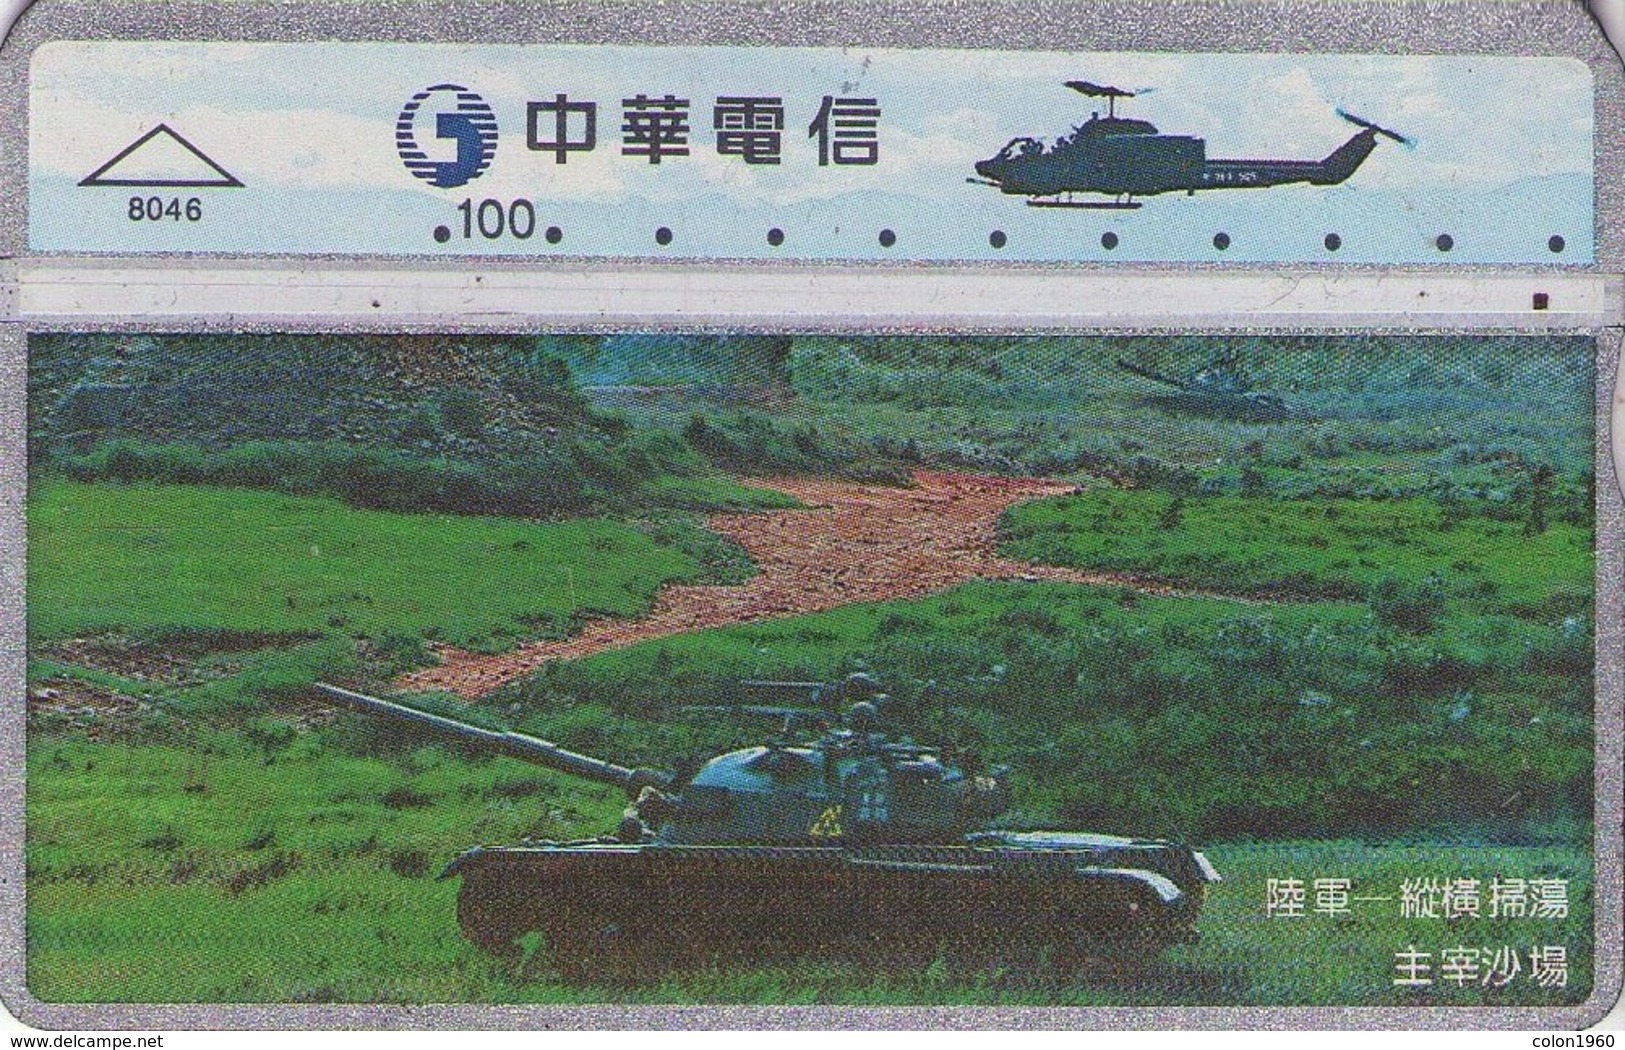 TAIWAN. 840K. ARMY - TANK. 8046. (119) - Armada